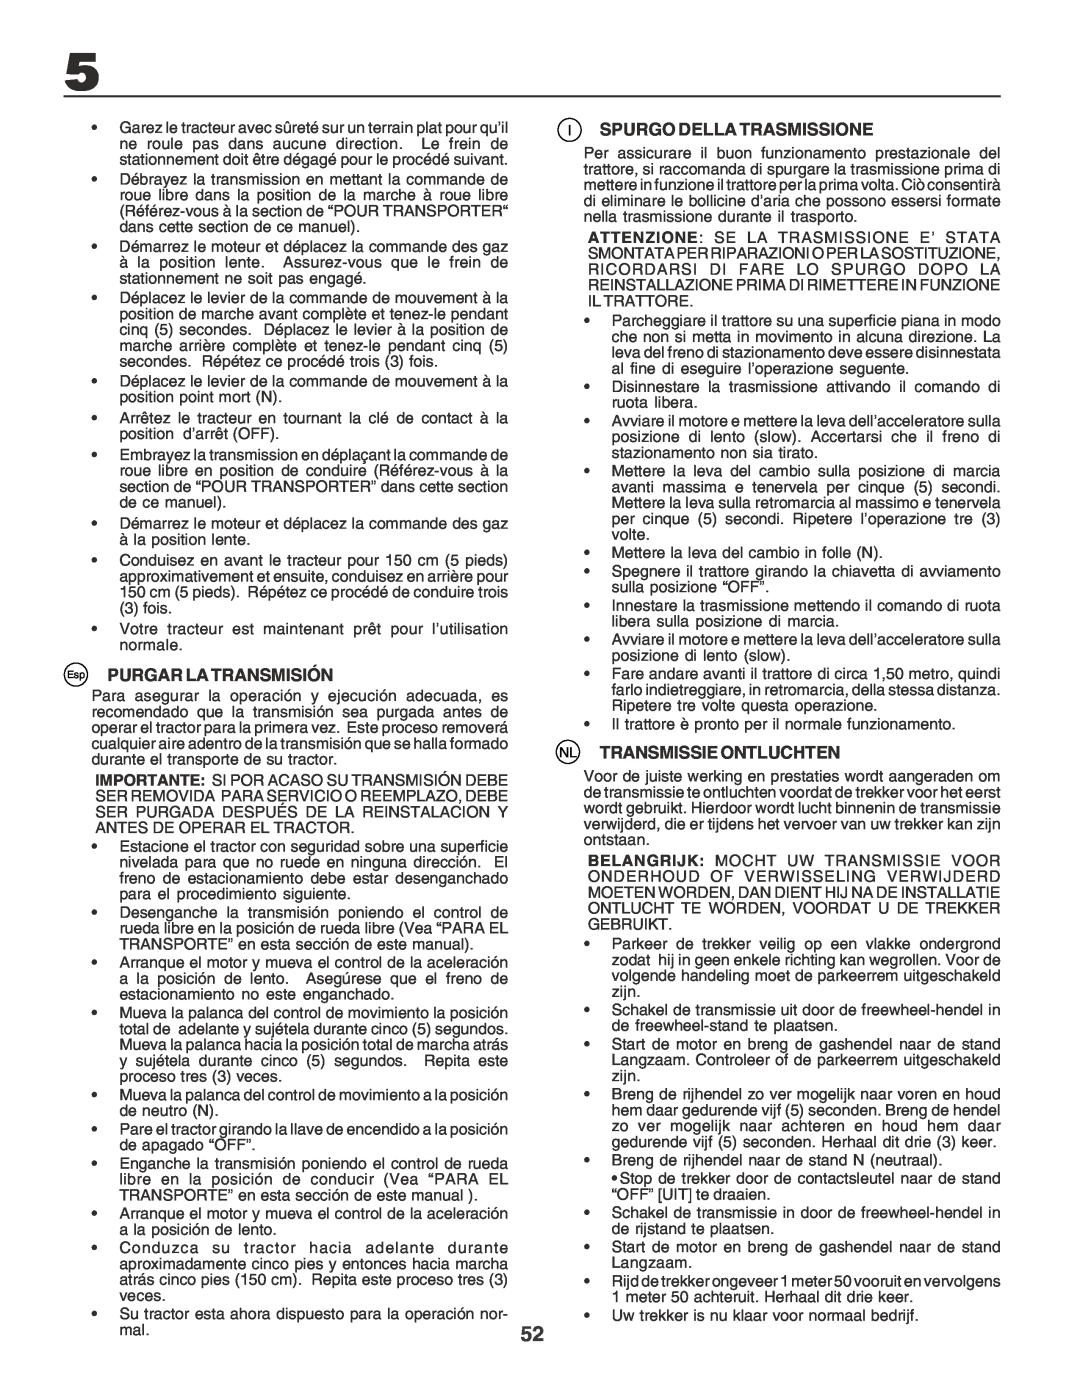 Husqvarna CTH170 instruction manual Esp PURGAR LA TRANSMISIÓN, Spurgo Della Trasmissione, Nl Transmissie Ontluchten 